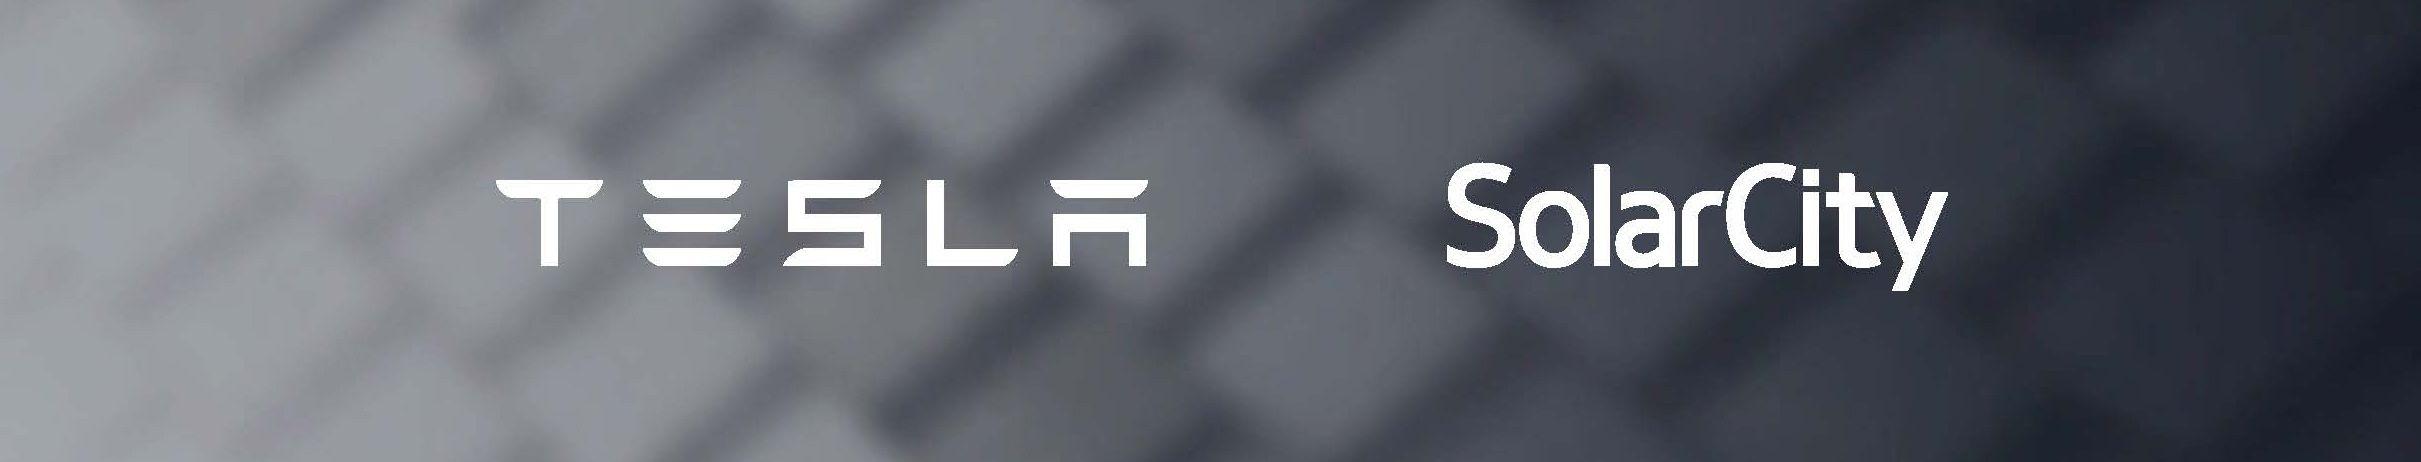 SolarCity Logo - Tesla and SolarCity | Tesla UK